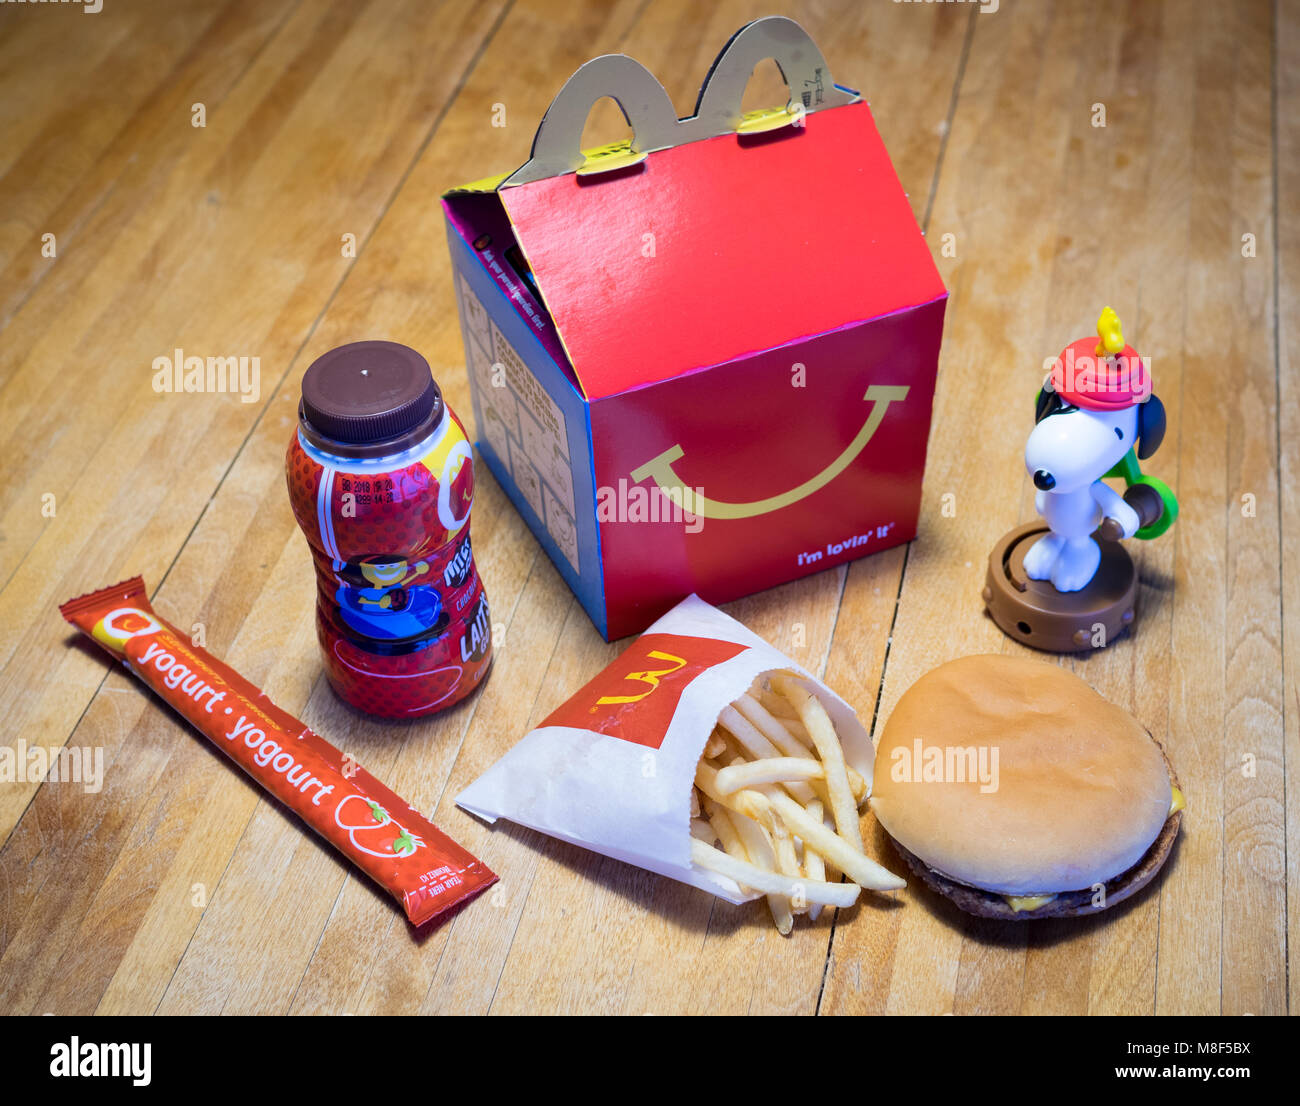 Ein McDonald's Happy Meal mit einem Cheeseburger, Pommes frites, Schokolade, Milch, Joghurt, und Snoopy Spielzeug. Stockfoto